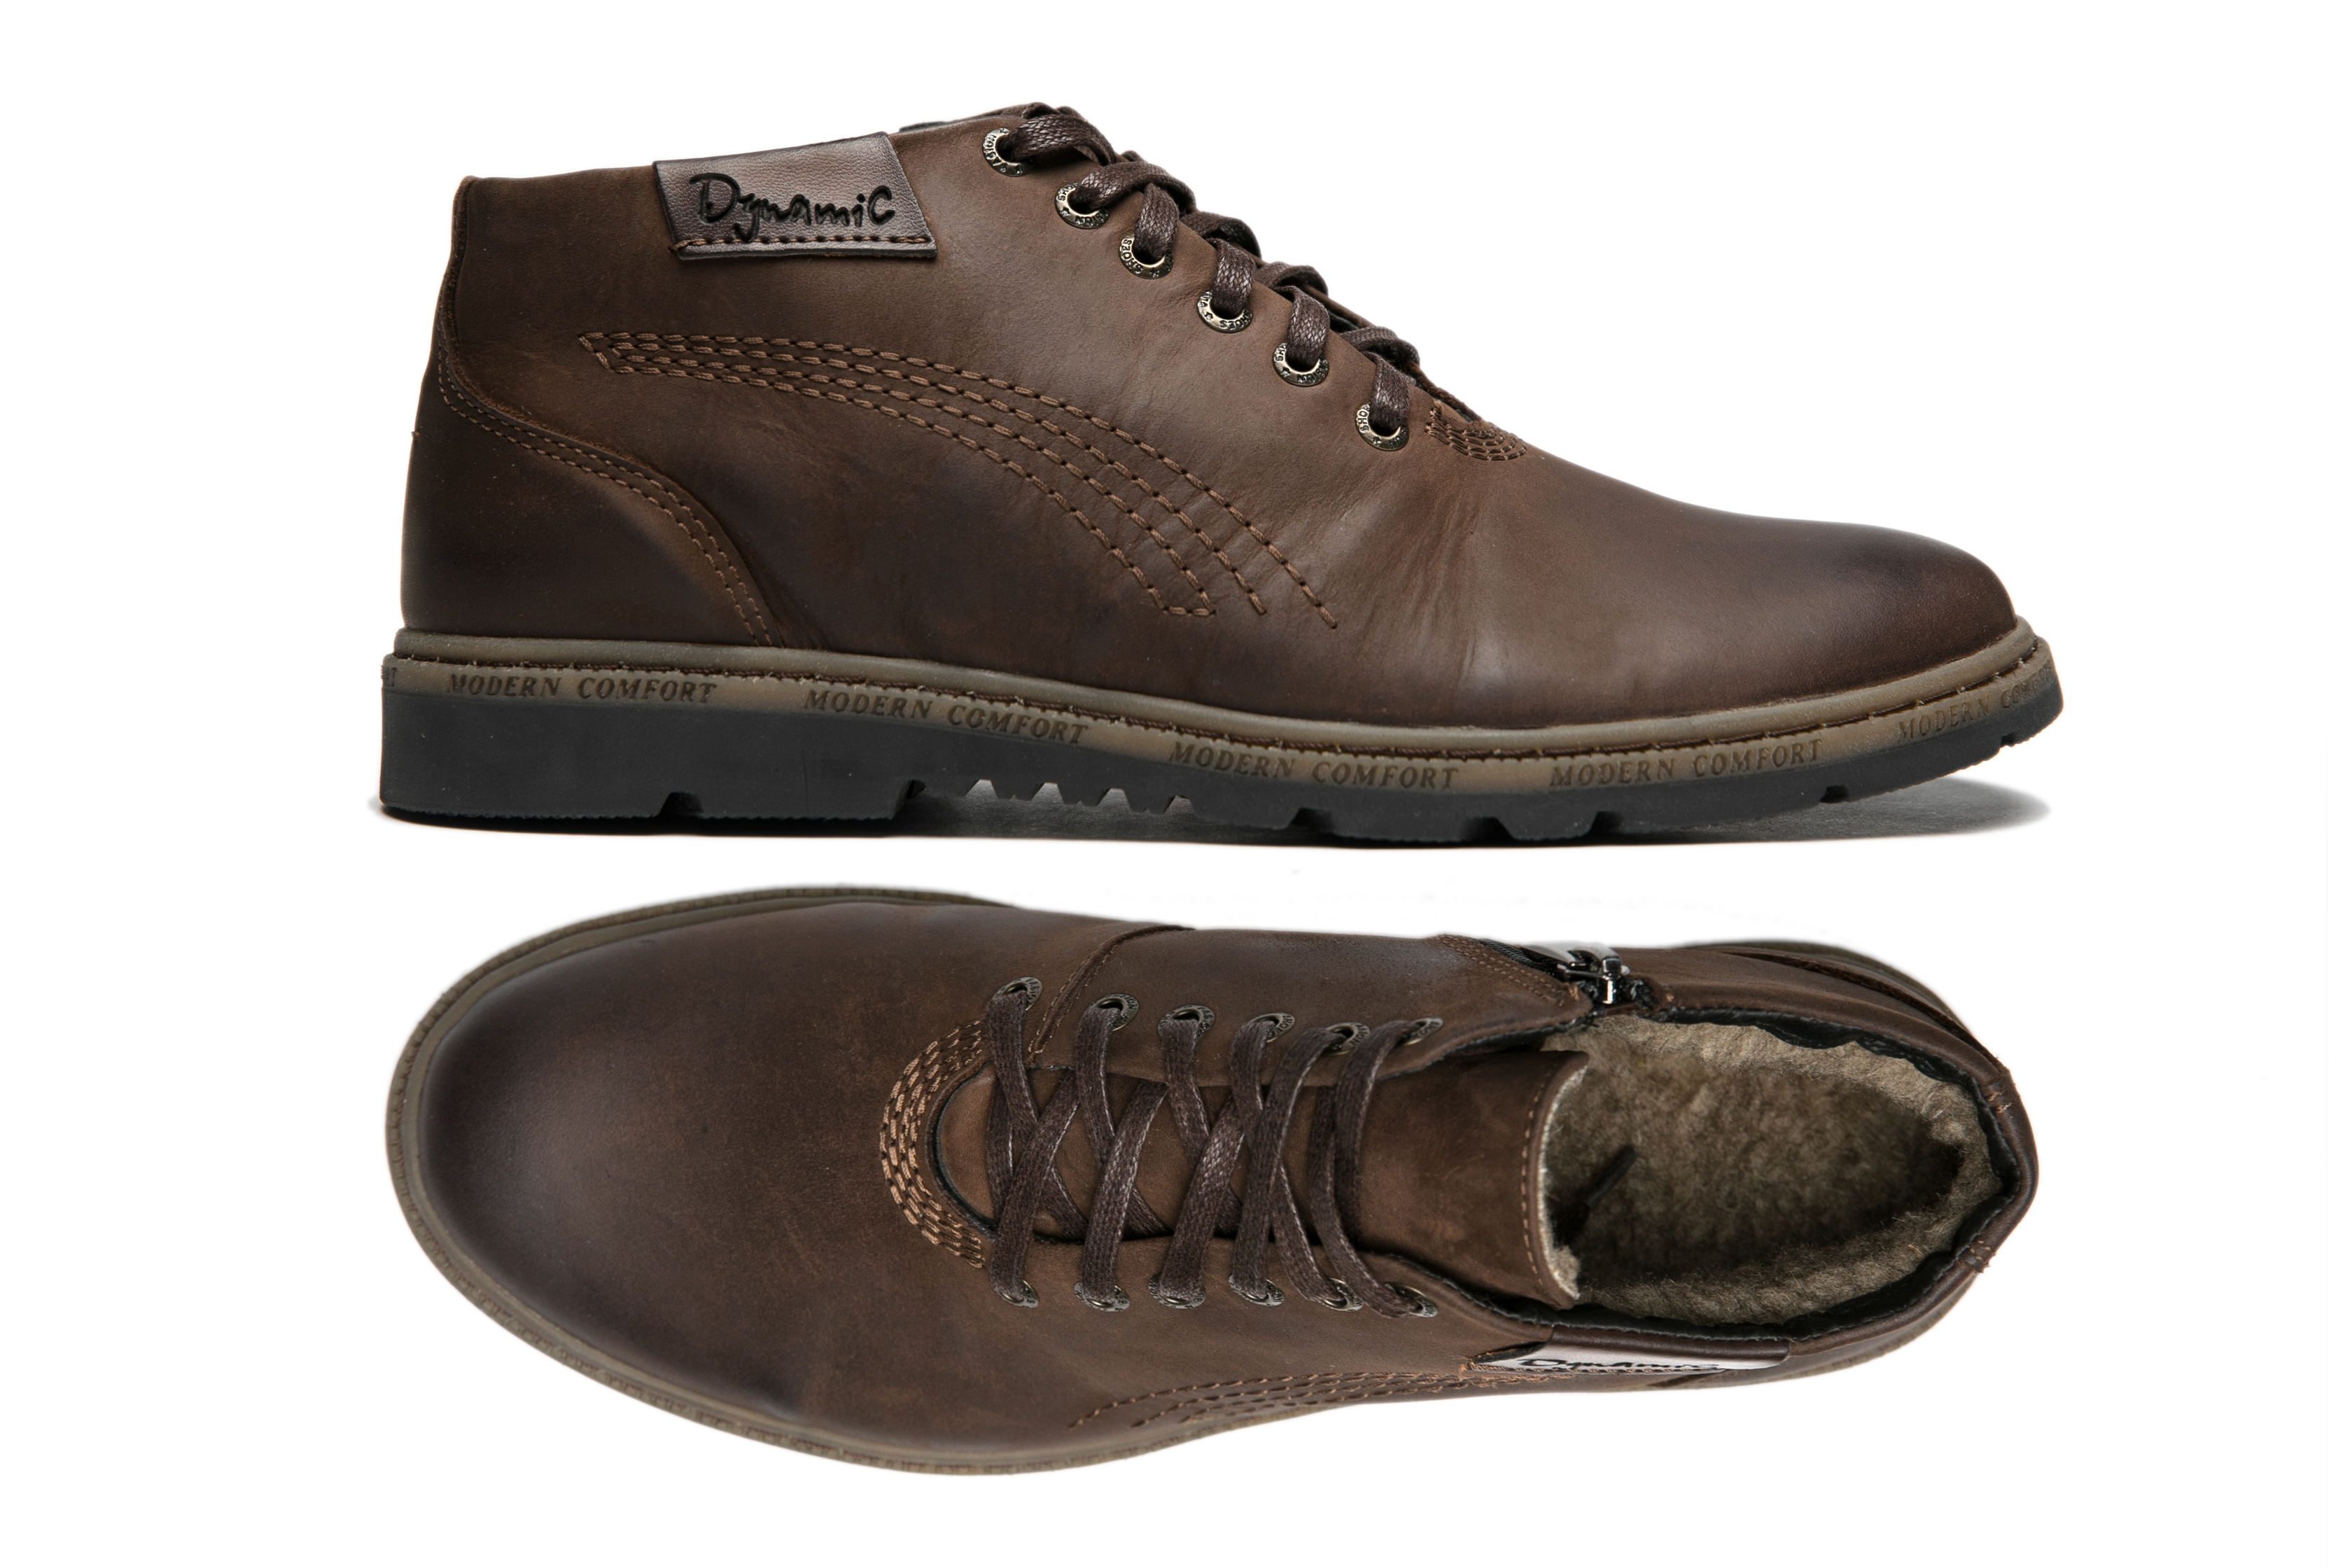 (746-13-01-5) - Мужские кожаные ботинки с застежкой-молнией на меху со шнурками